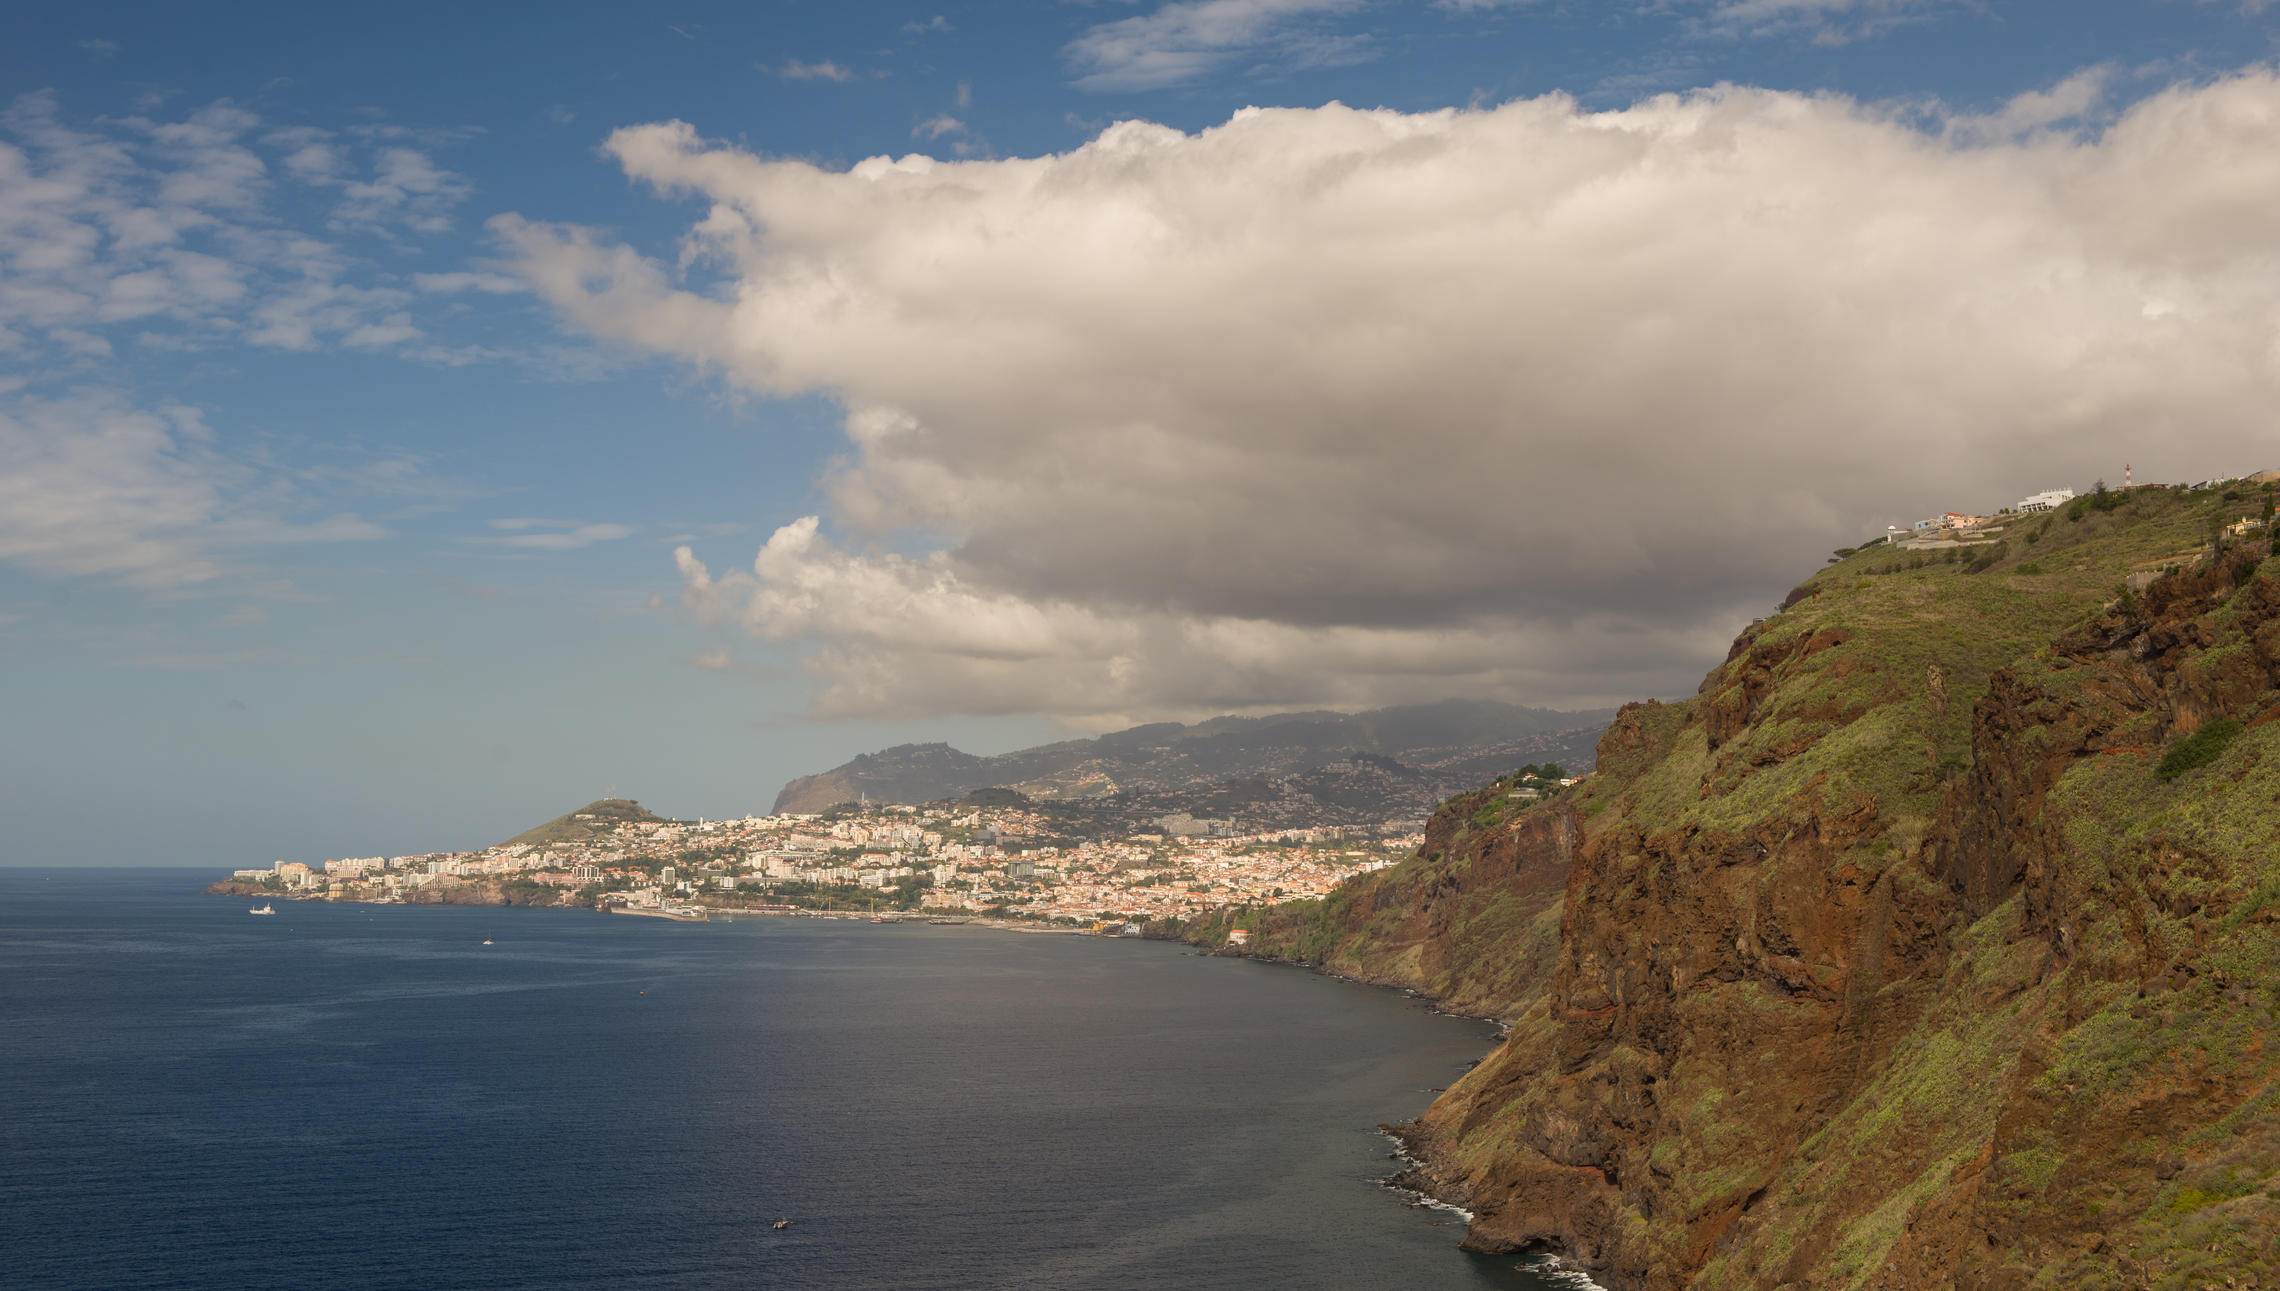  острова моей мечты , Мадейра